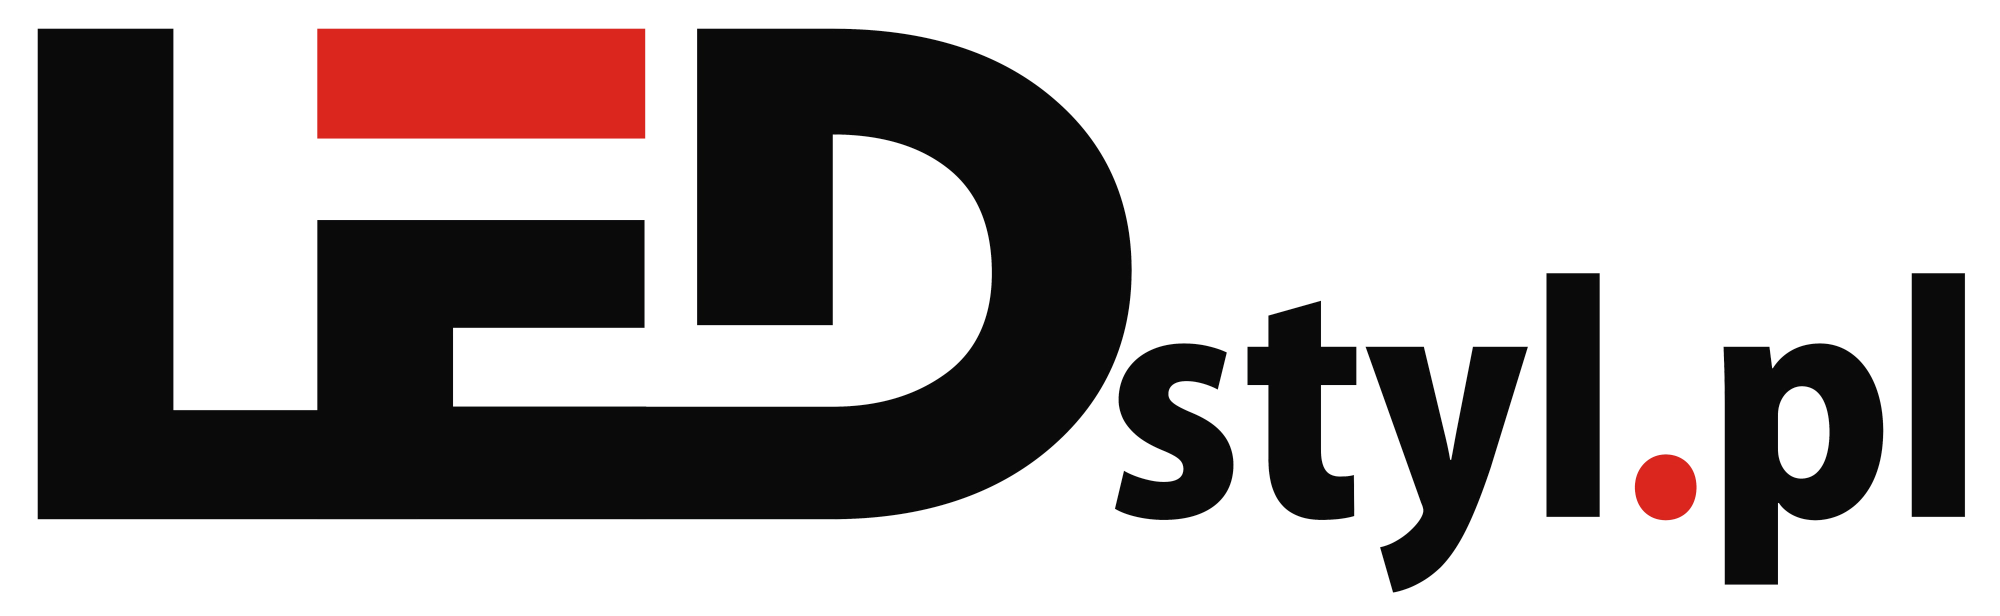 Blog LEDstyl Logo 1